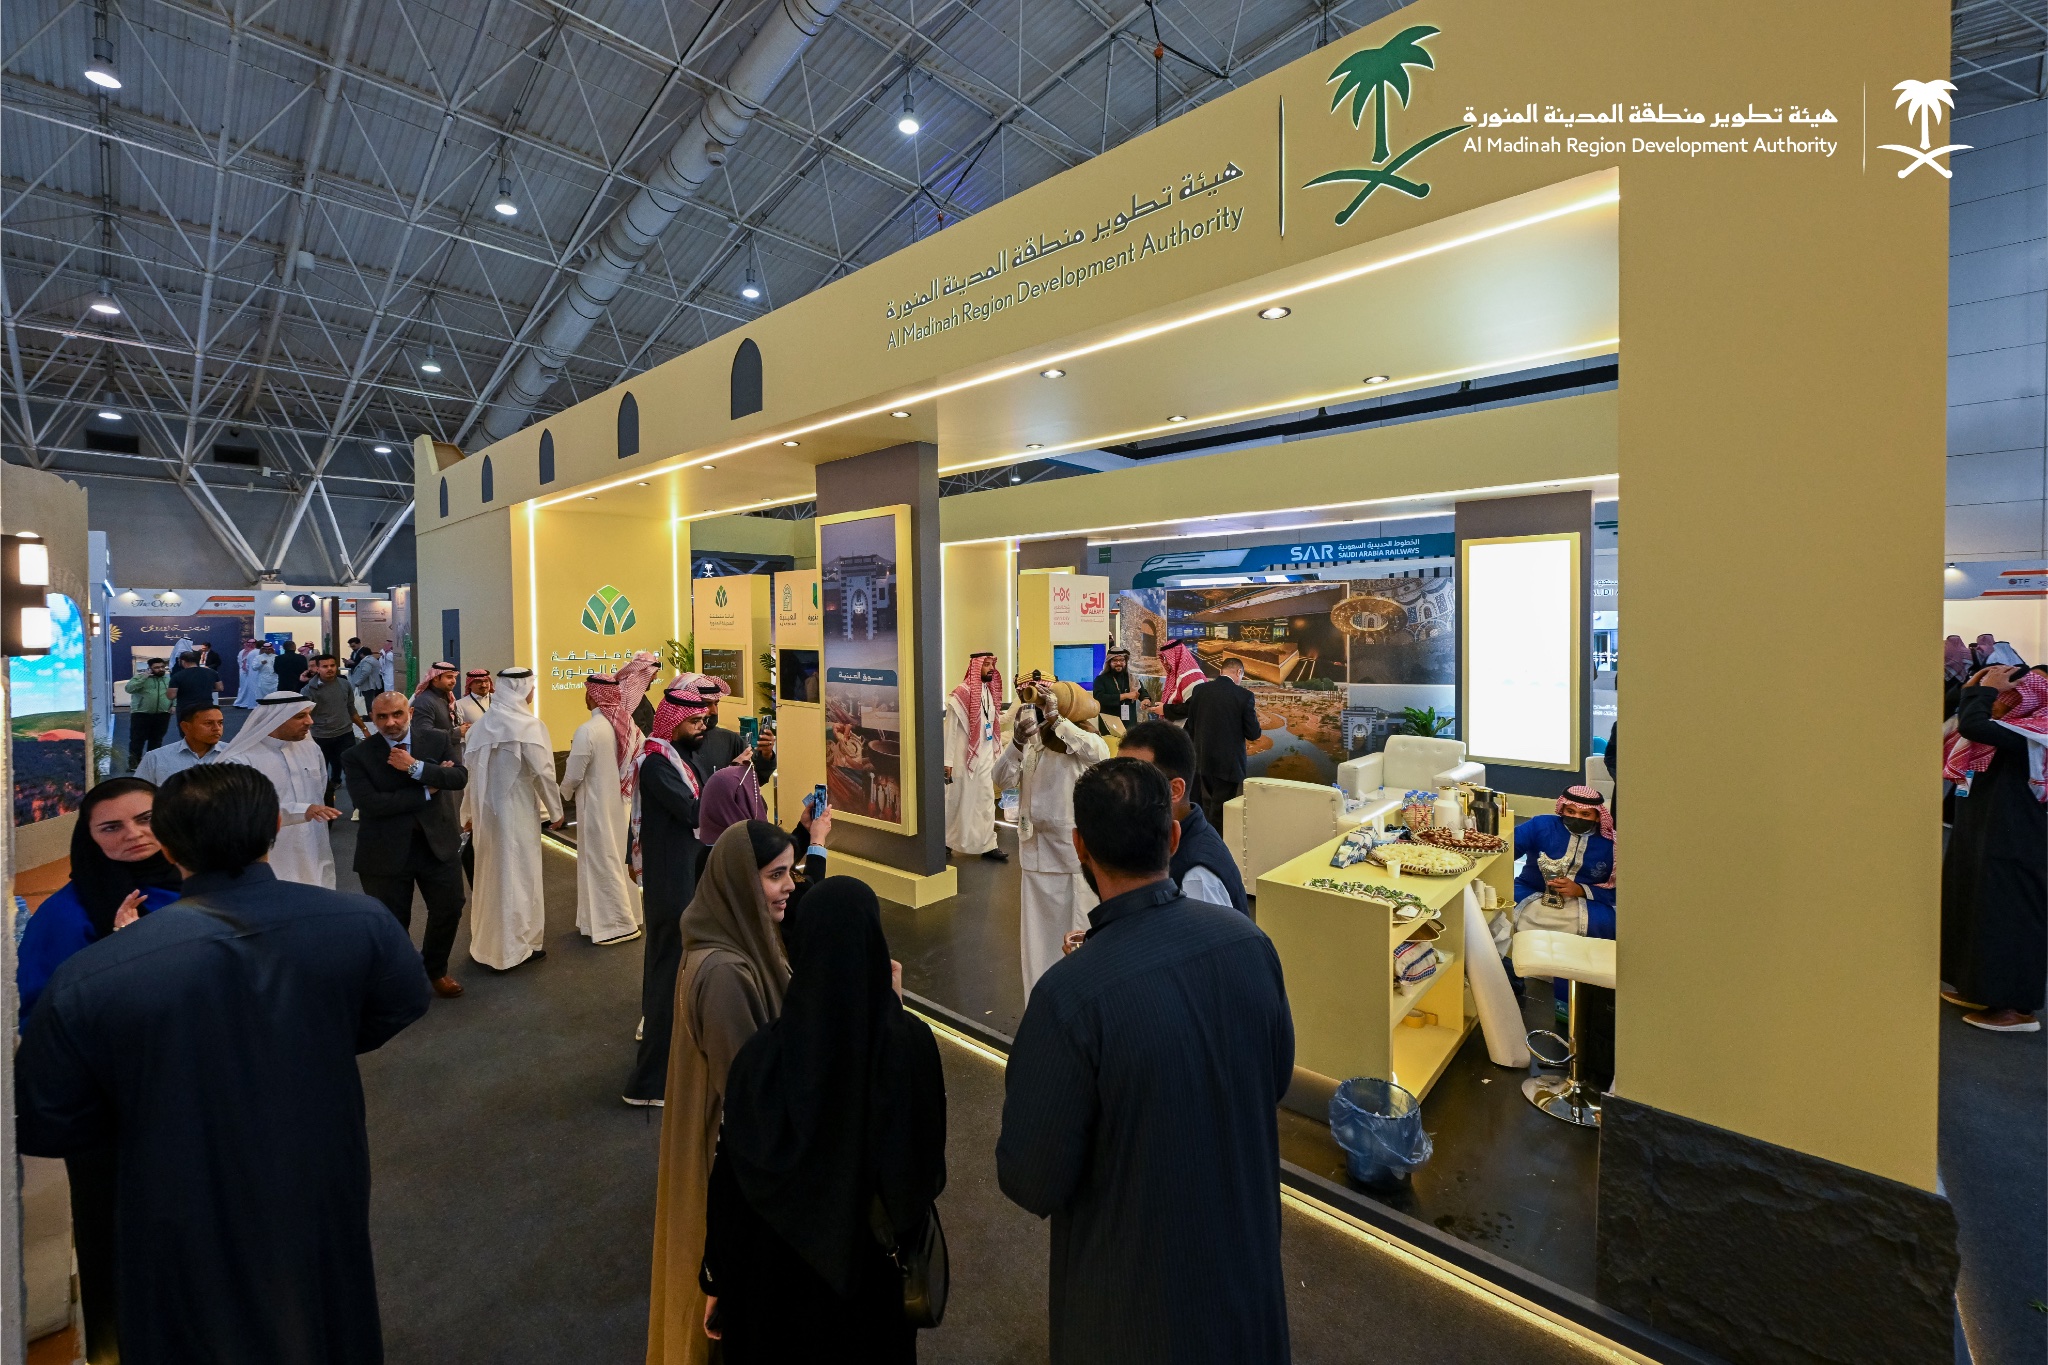 هيئة تطوير منطقة المدينة المنورة تشارك في "ملتقى السياحة السعودي"